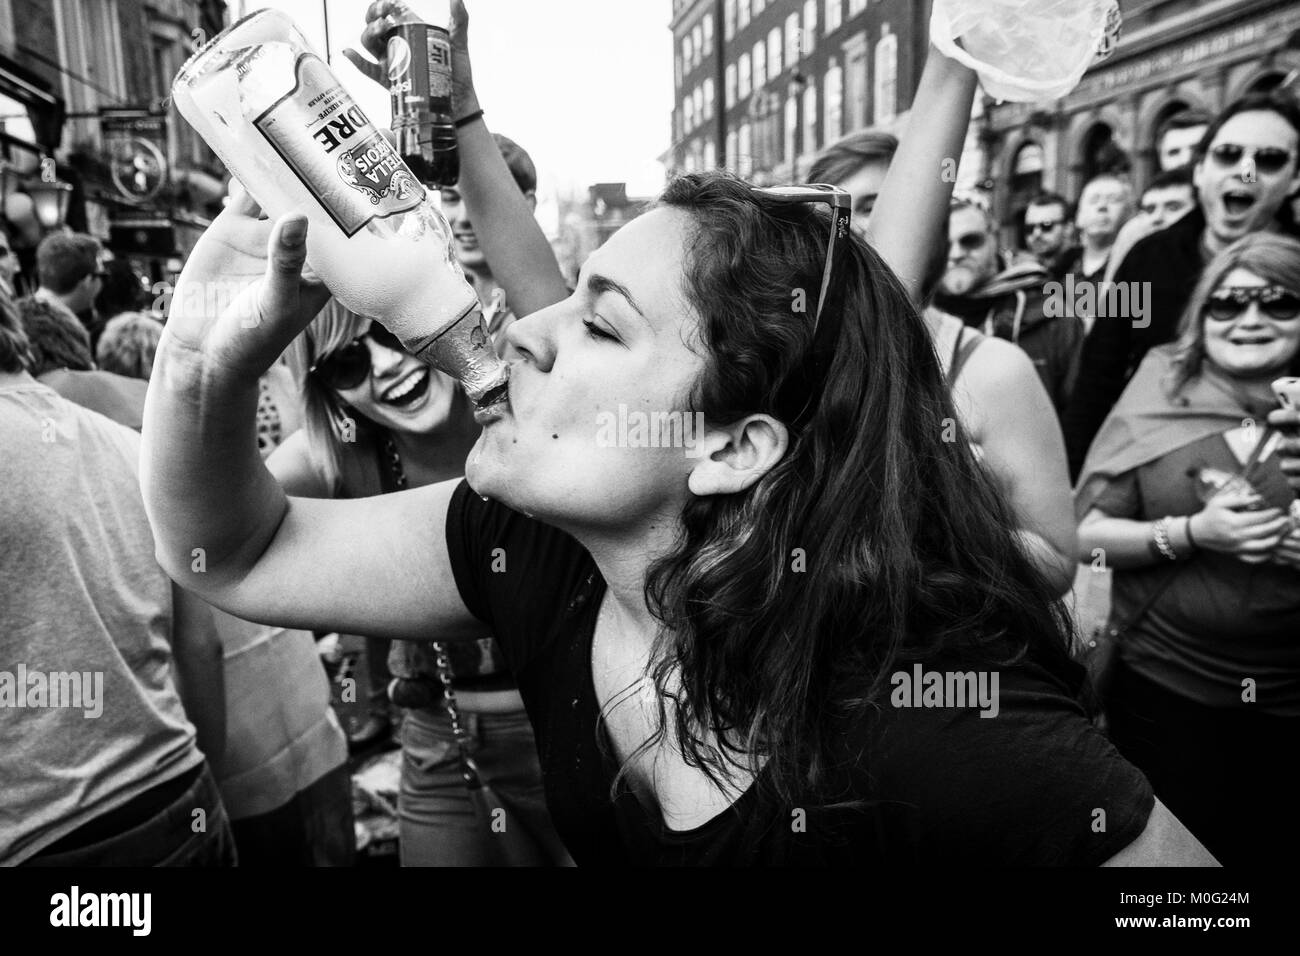 Fotografia di strada in bianco e nero a Londra: Giovane donna allietata dalla folla mentre beve dalla bottiglia alla festa di strada. Foto Stock